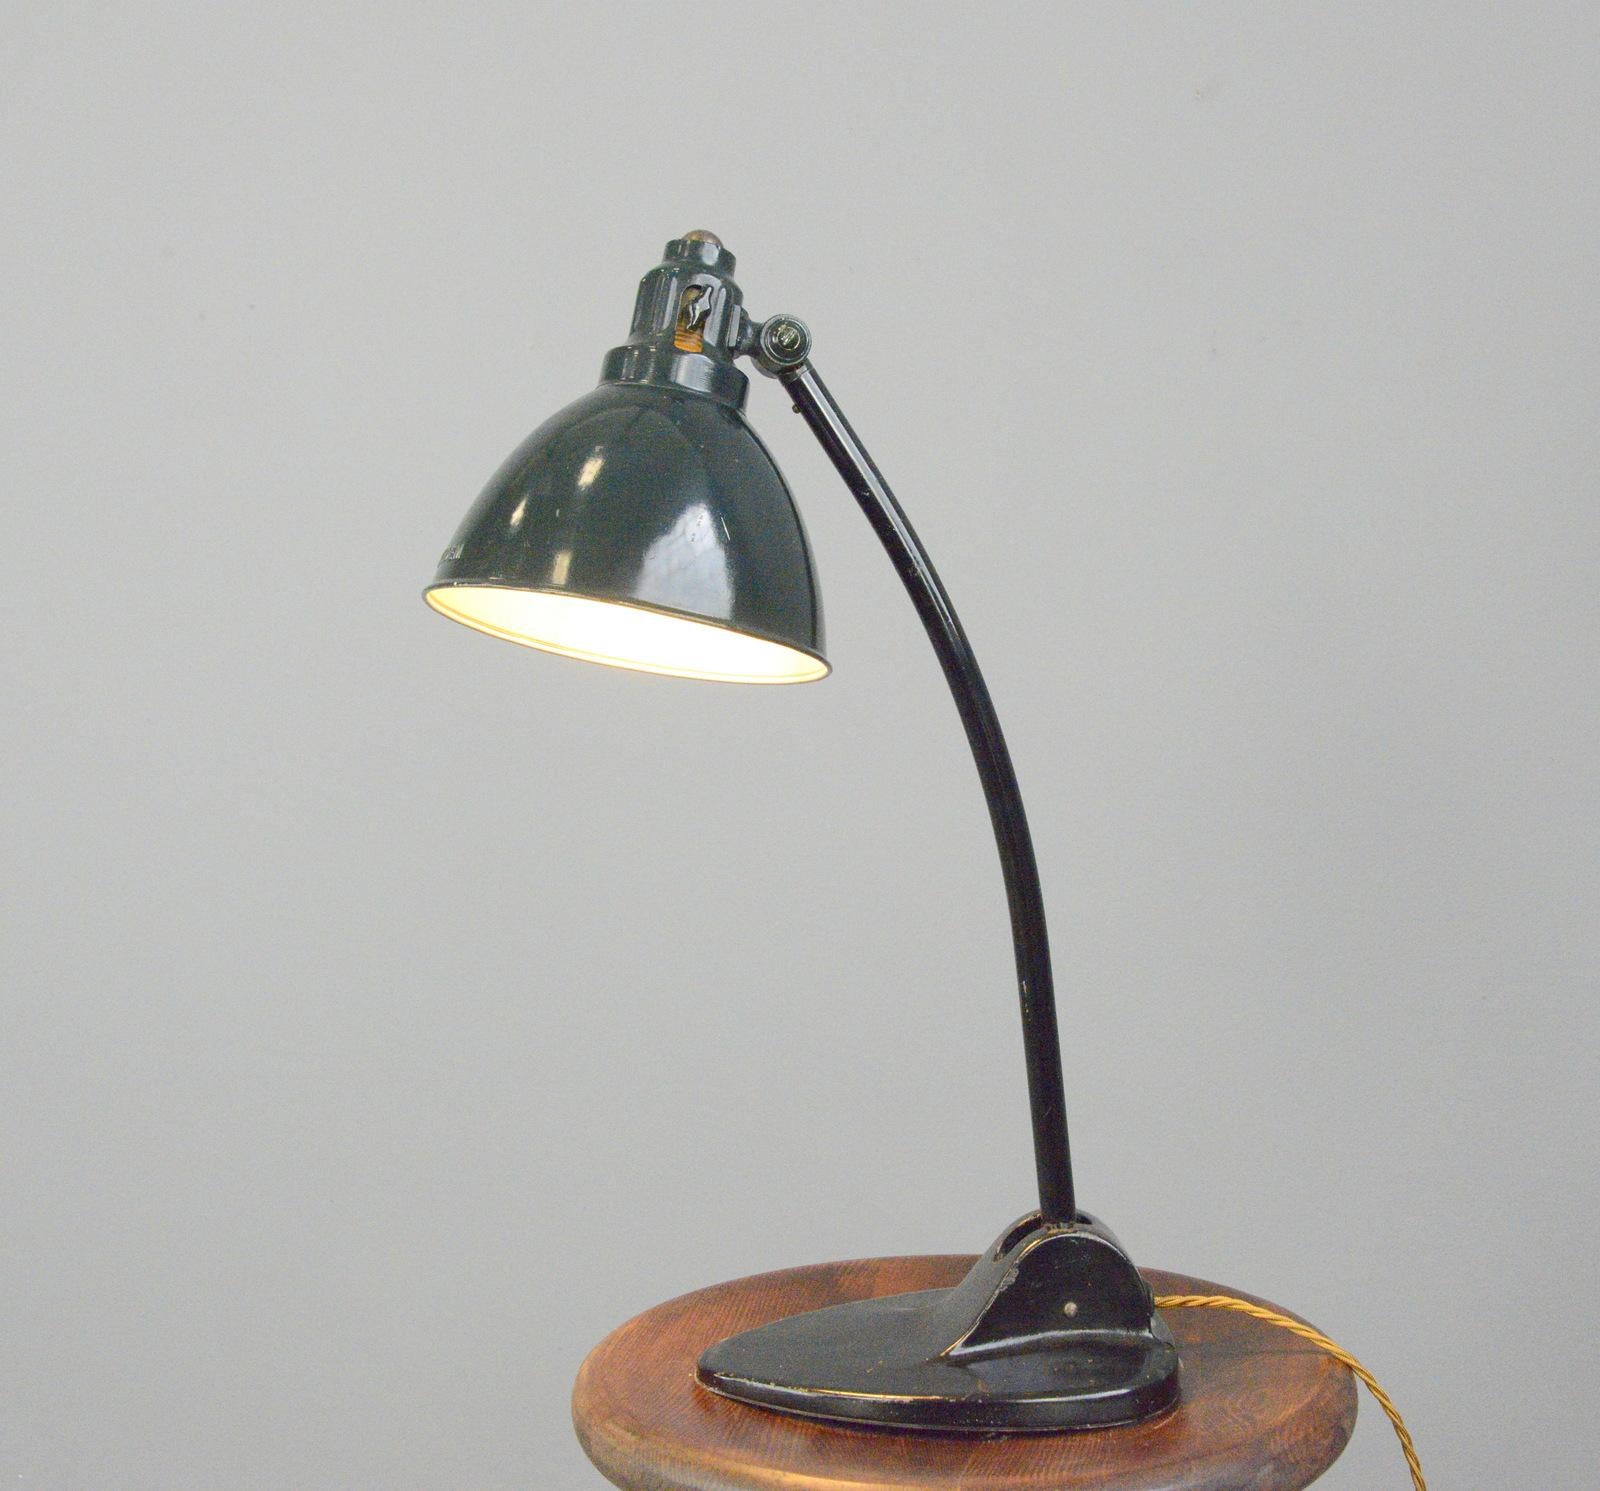 Kandem Modell 573 Tischlampe CIRCA 1920er Jahre

- Schirm aus gepresstem Stahl
- Branding 